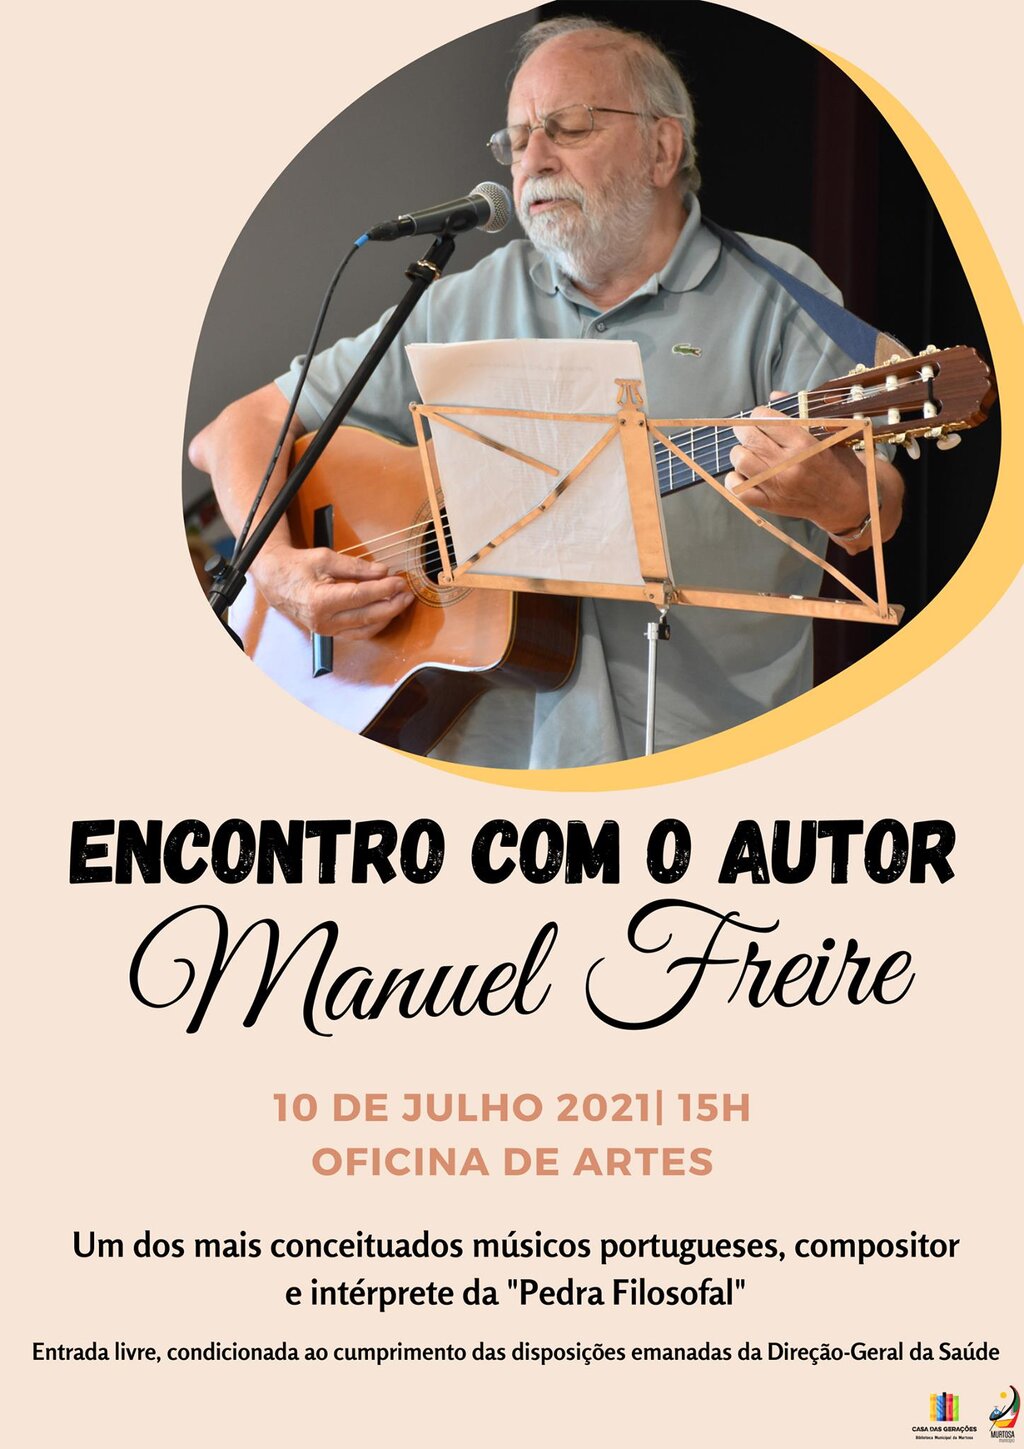  Manuel Freire - Encontro com o Autor